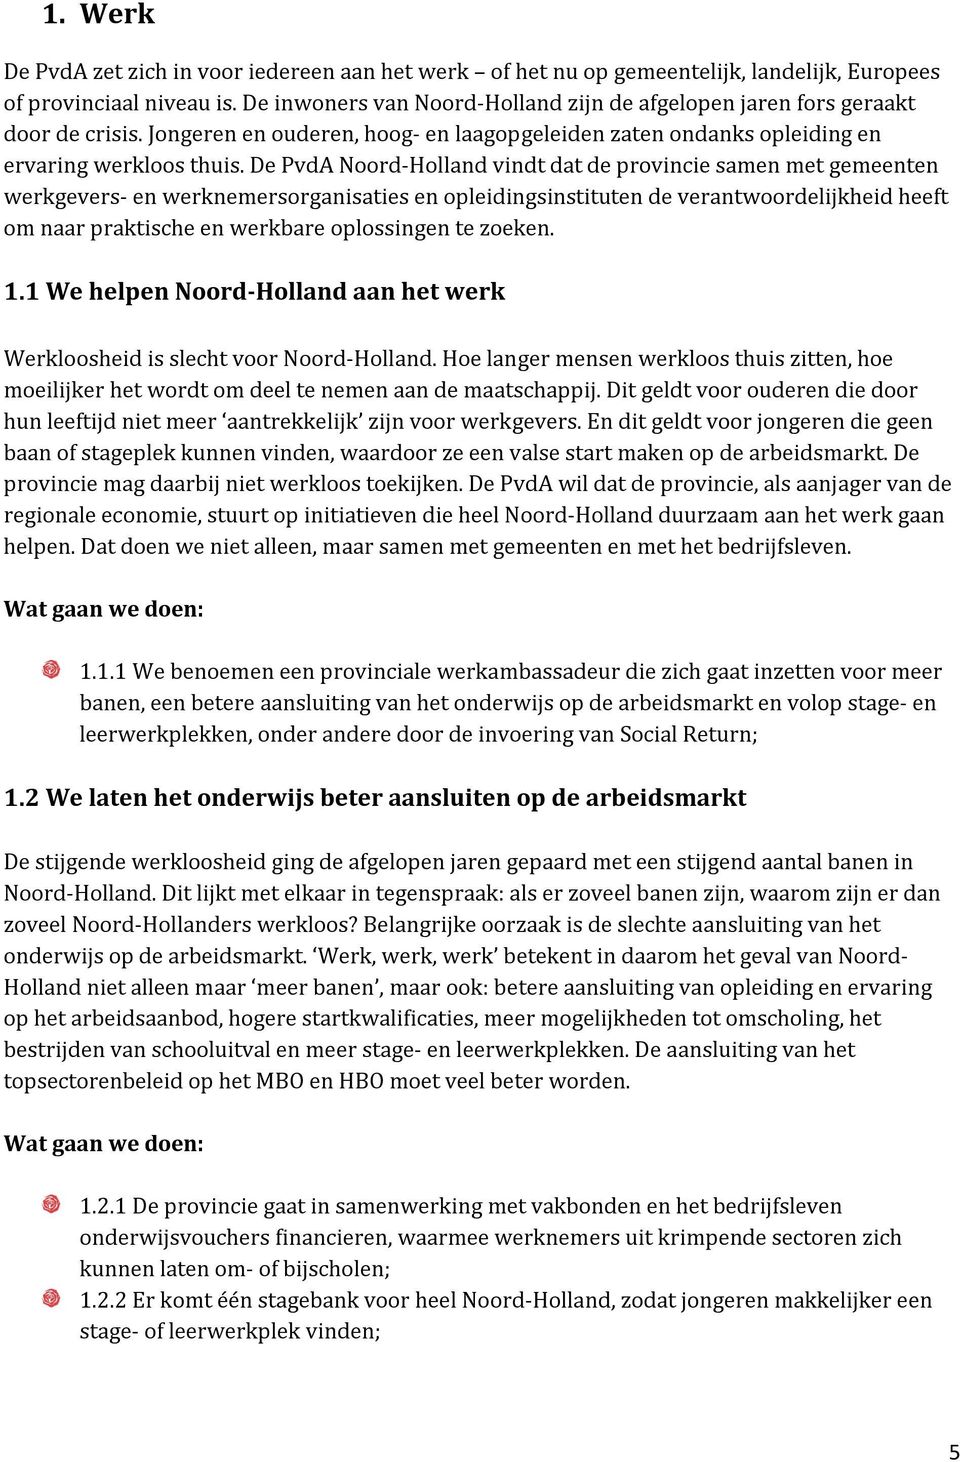 De PvdA Noord-Holland vindt dat de provincie samen met gemeenten werkgevers- en werknemersorganisaties en opleidingsinstituten de verantwoordelijkheid heeft om naar praktische en werkbare oplossingen